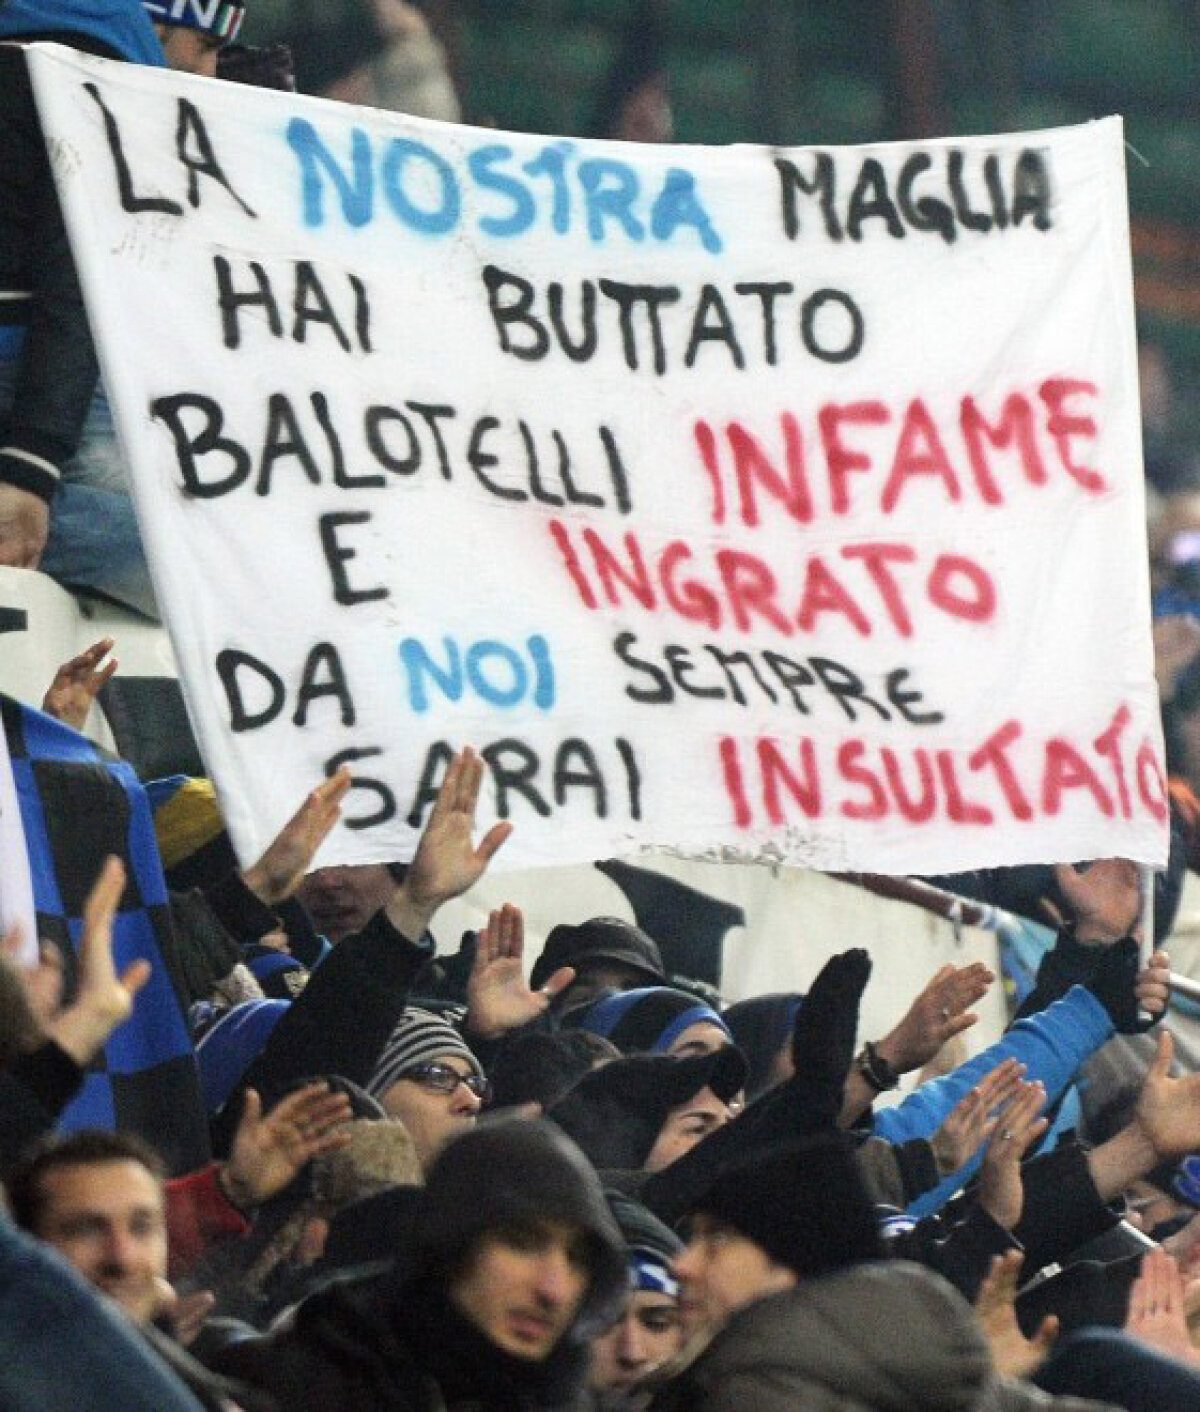 FOTO Goluri ba, insulte da! » Batjocorit de fanii interişti, Balotelli s-a întrecut în ratări în derbyul milanez (1-1)